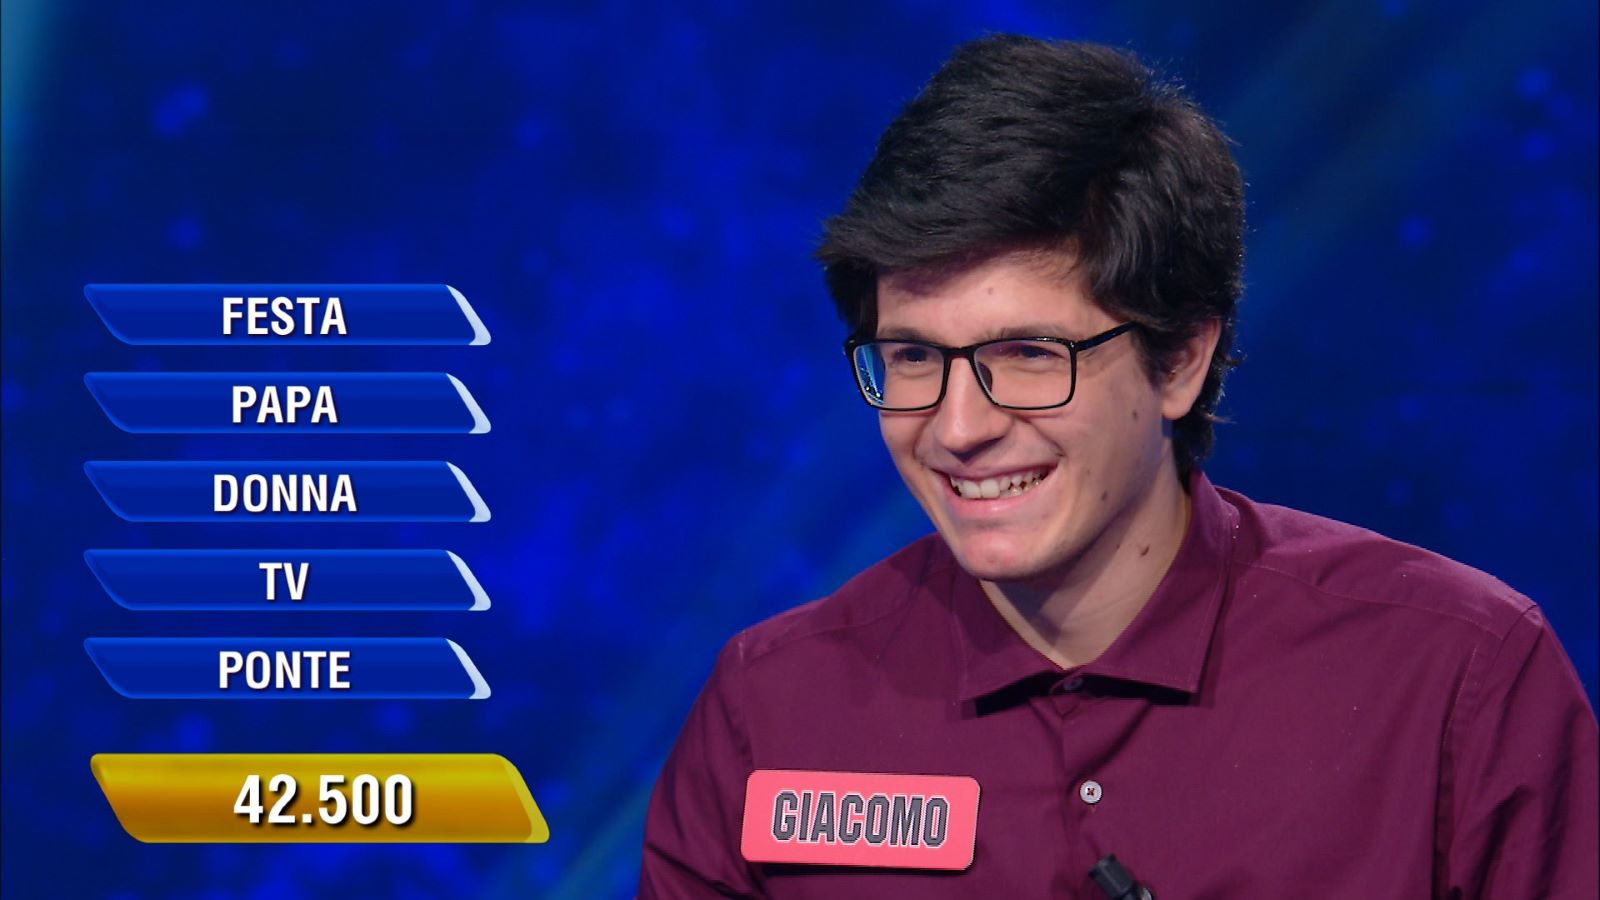 L’Eredità: chi è Giacomo Candoni il nuovo campione del programma di Rai 1